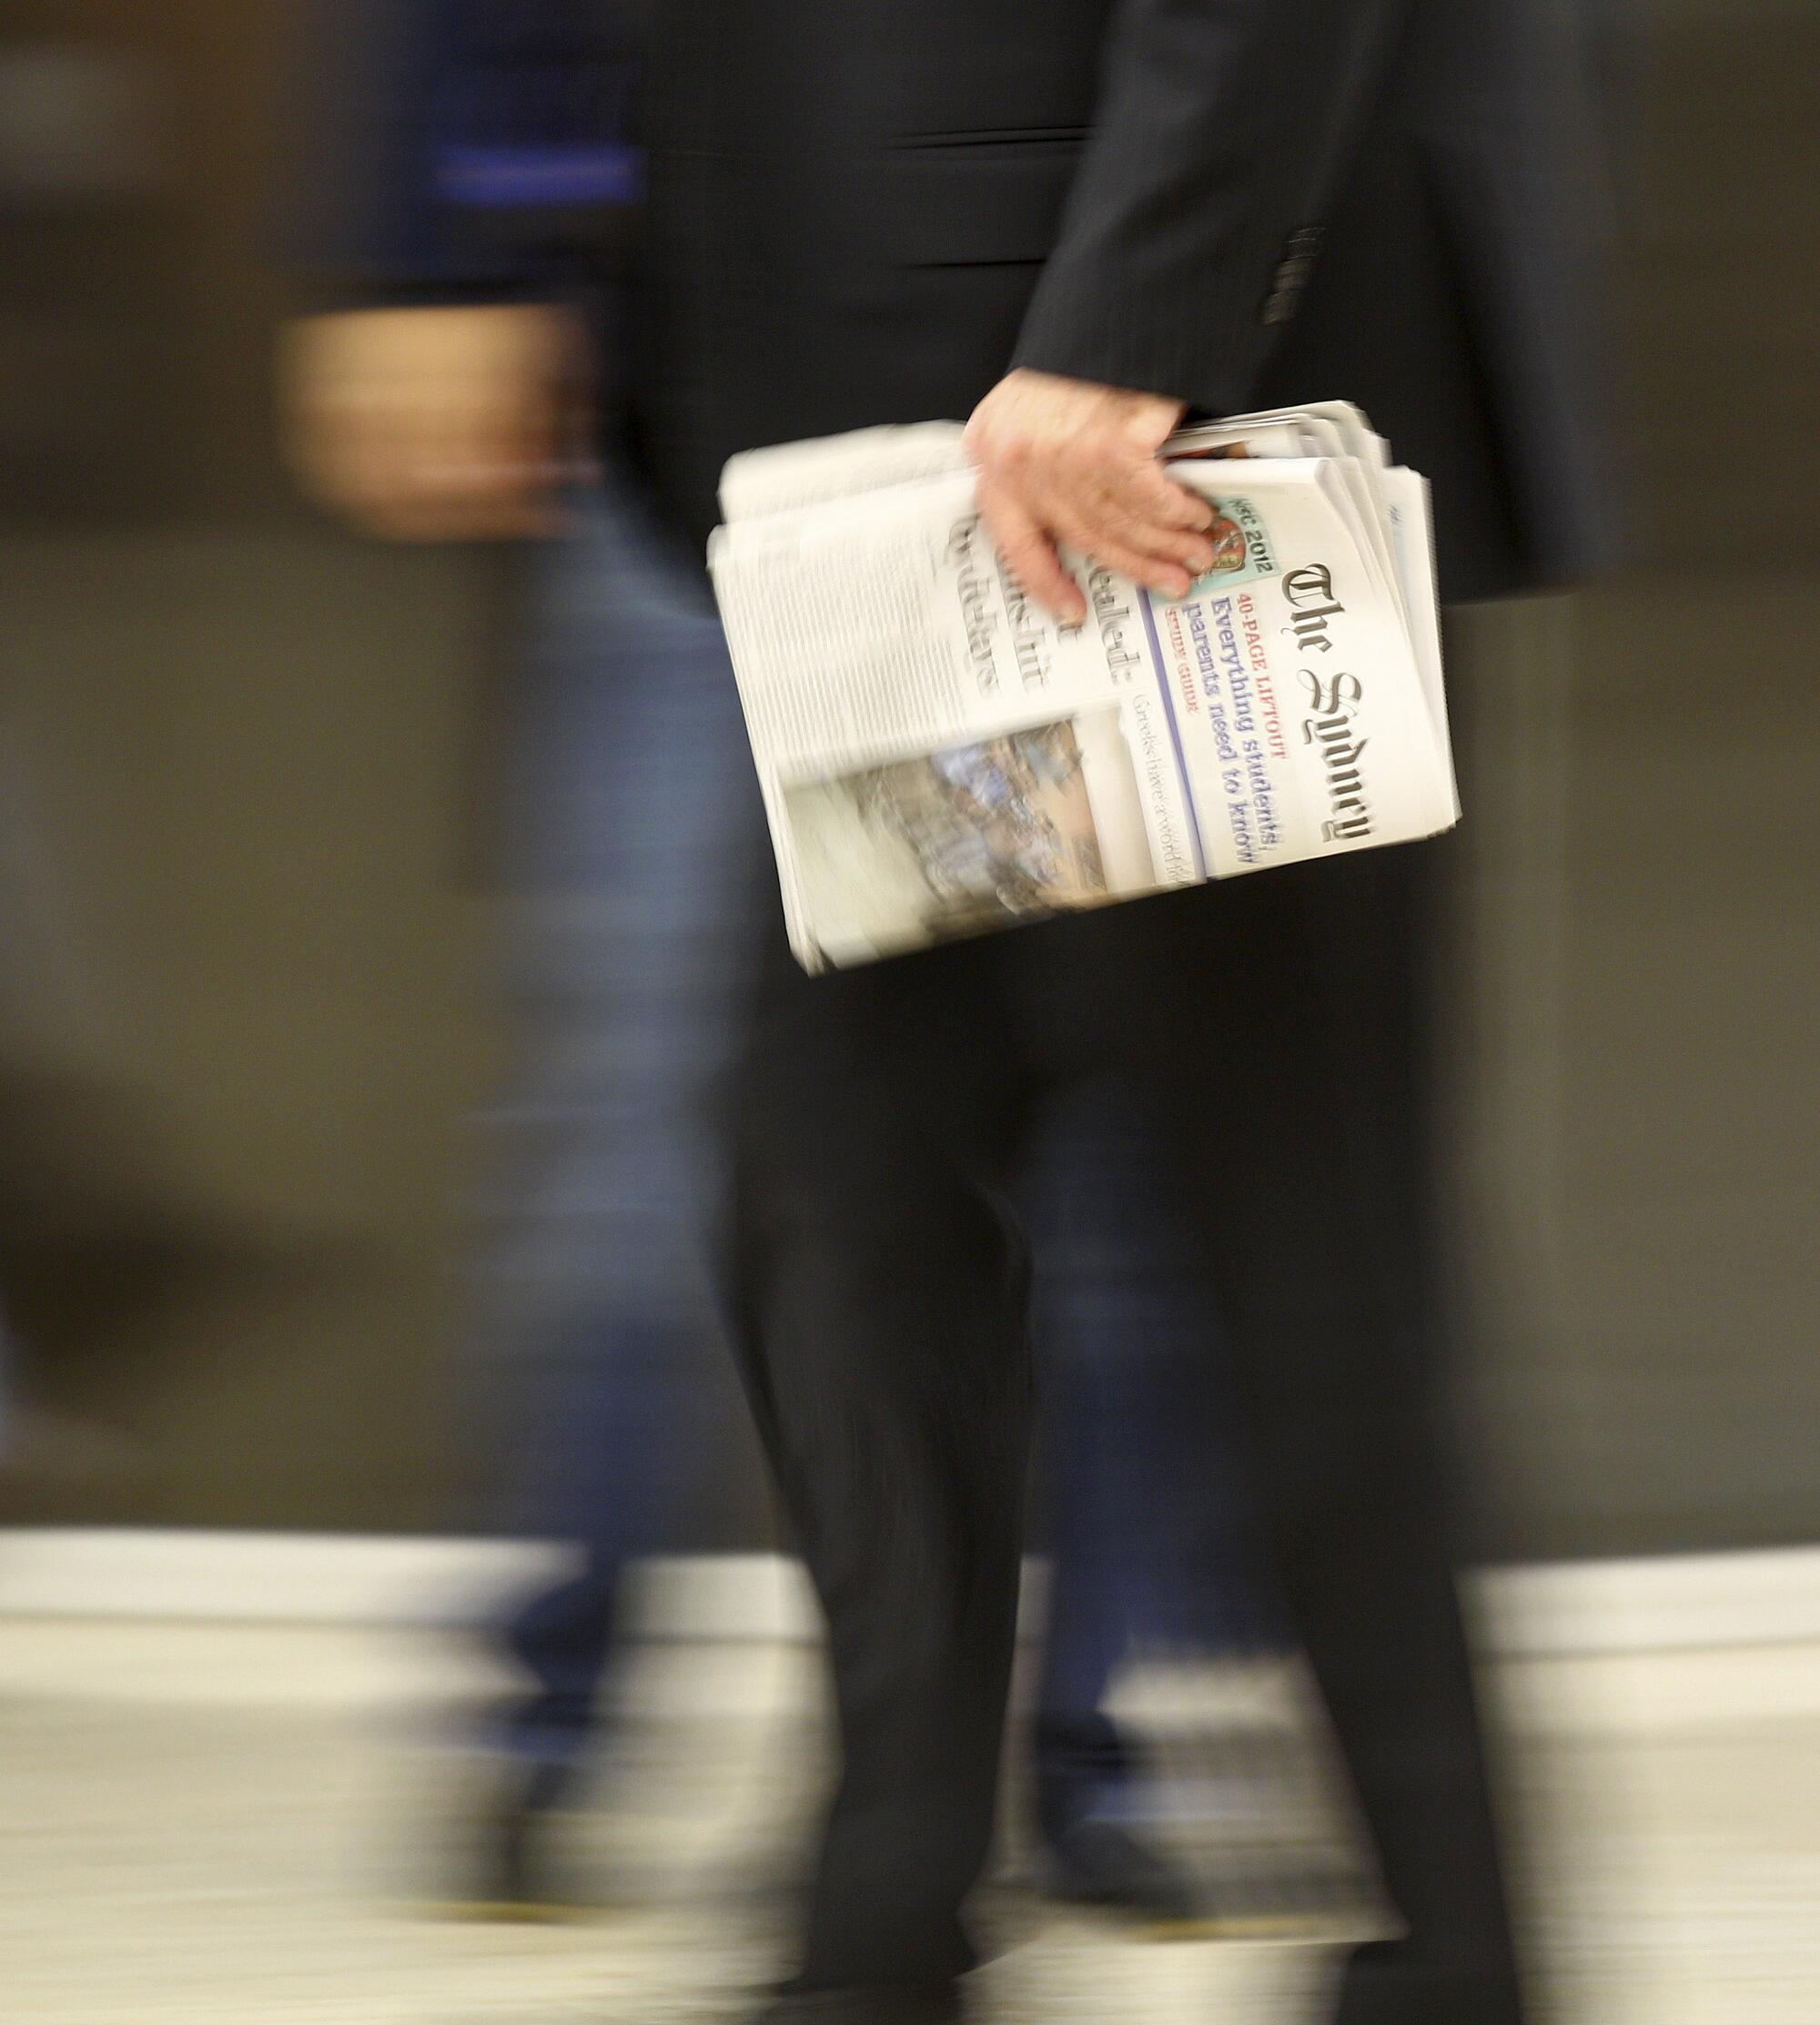 A man carries a newspaper.